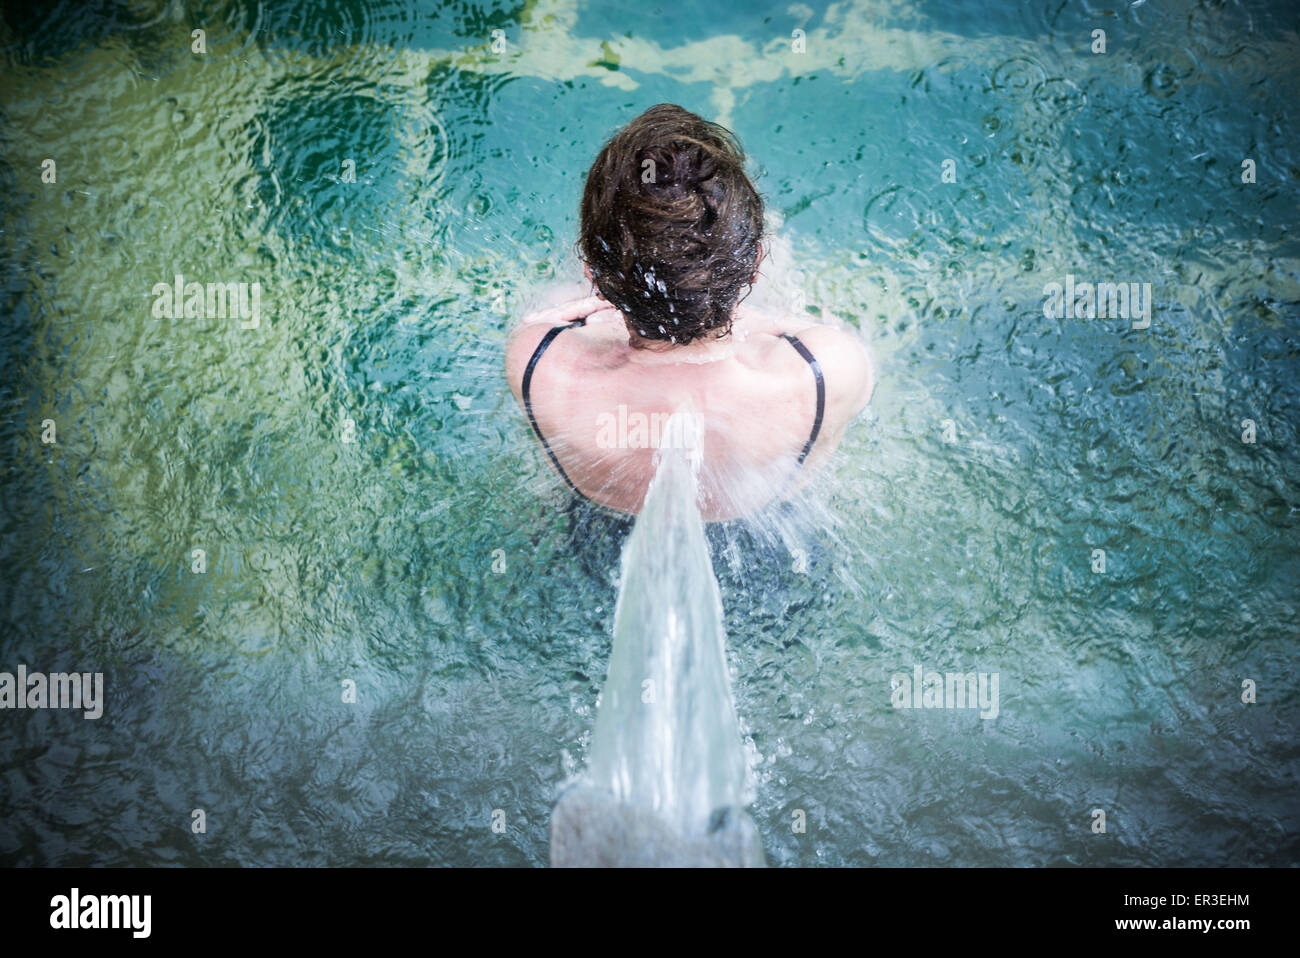 Woman in spa pool. Stock Photo